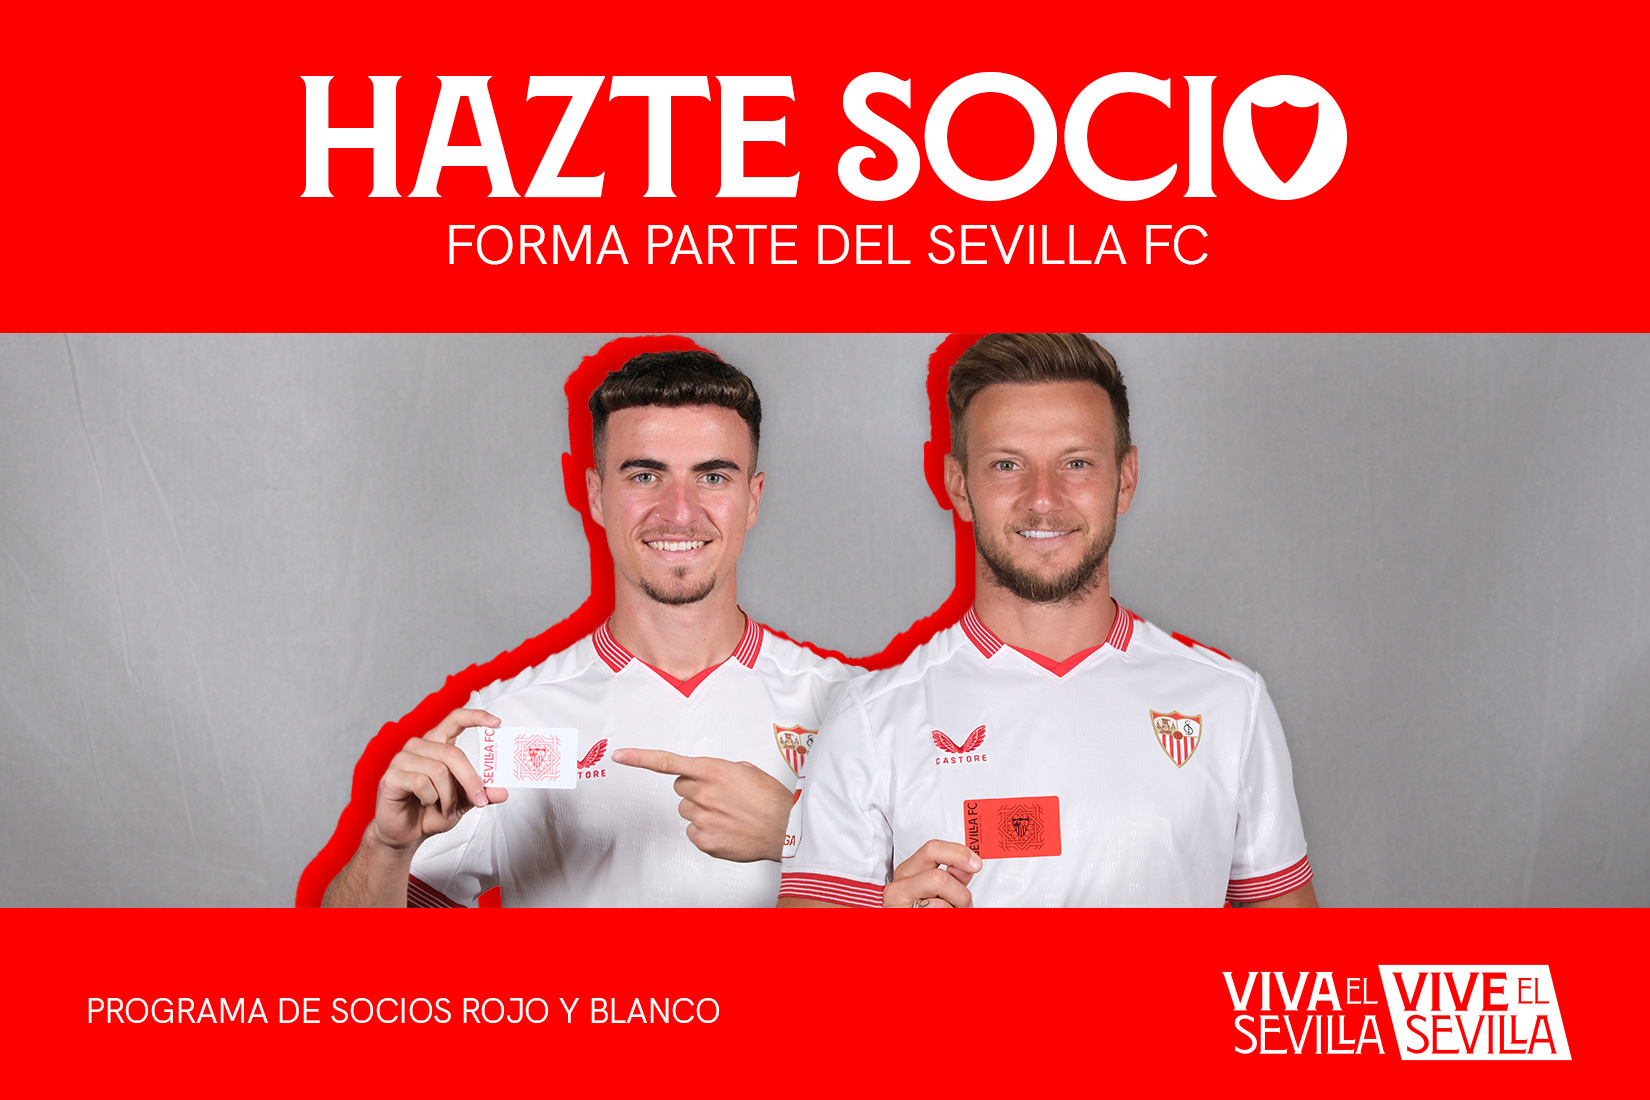 Nueva campaña de socios rojos y blancos del Sevilla FC